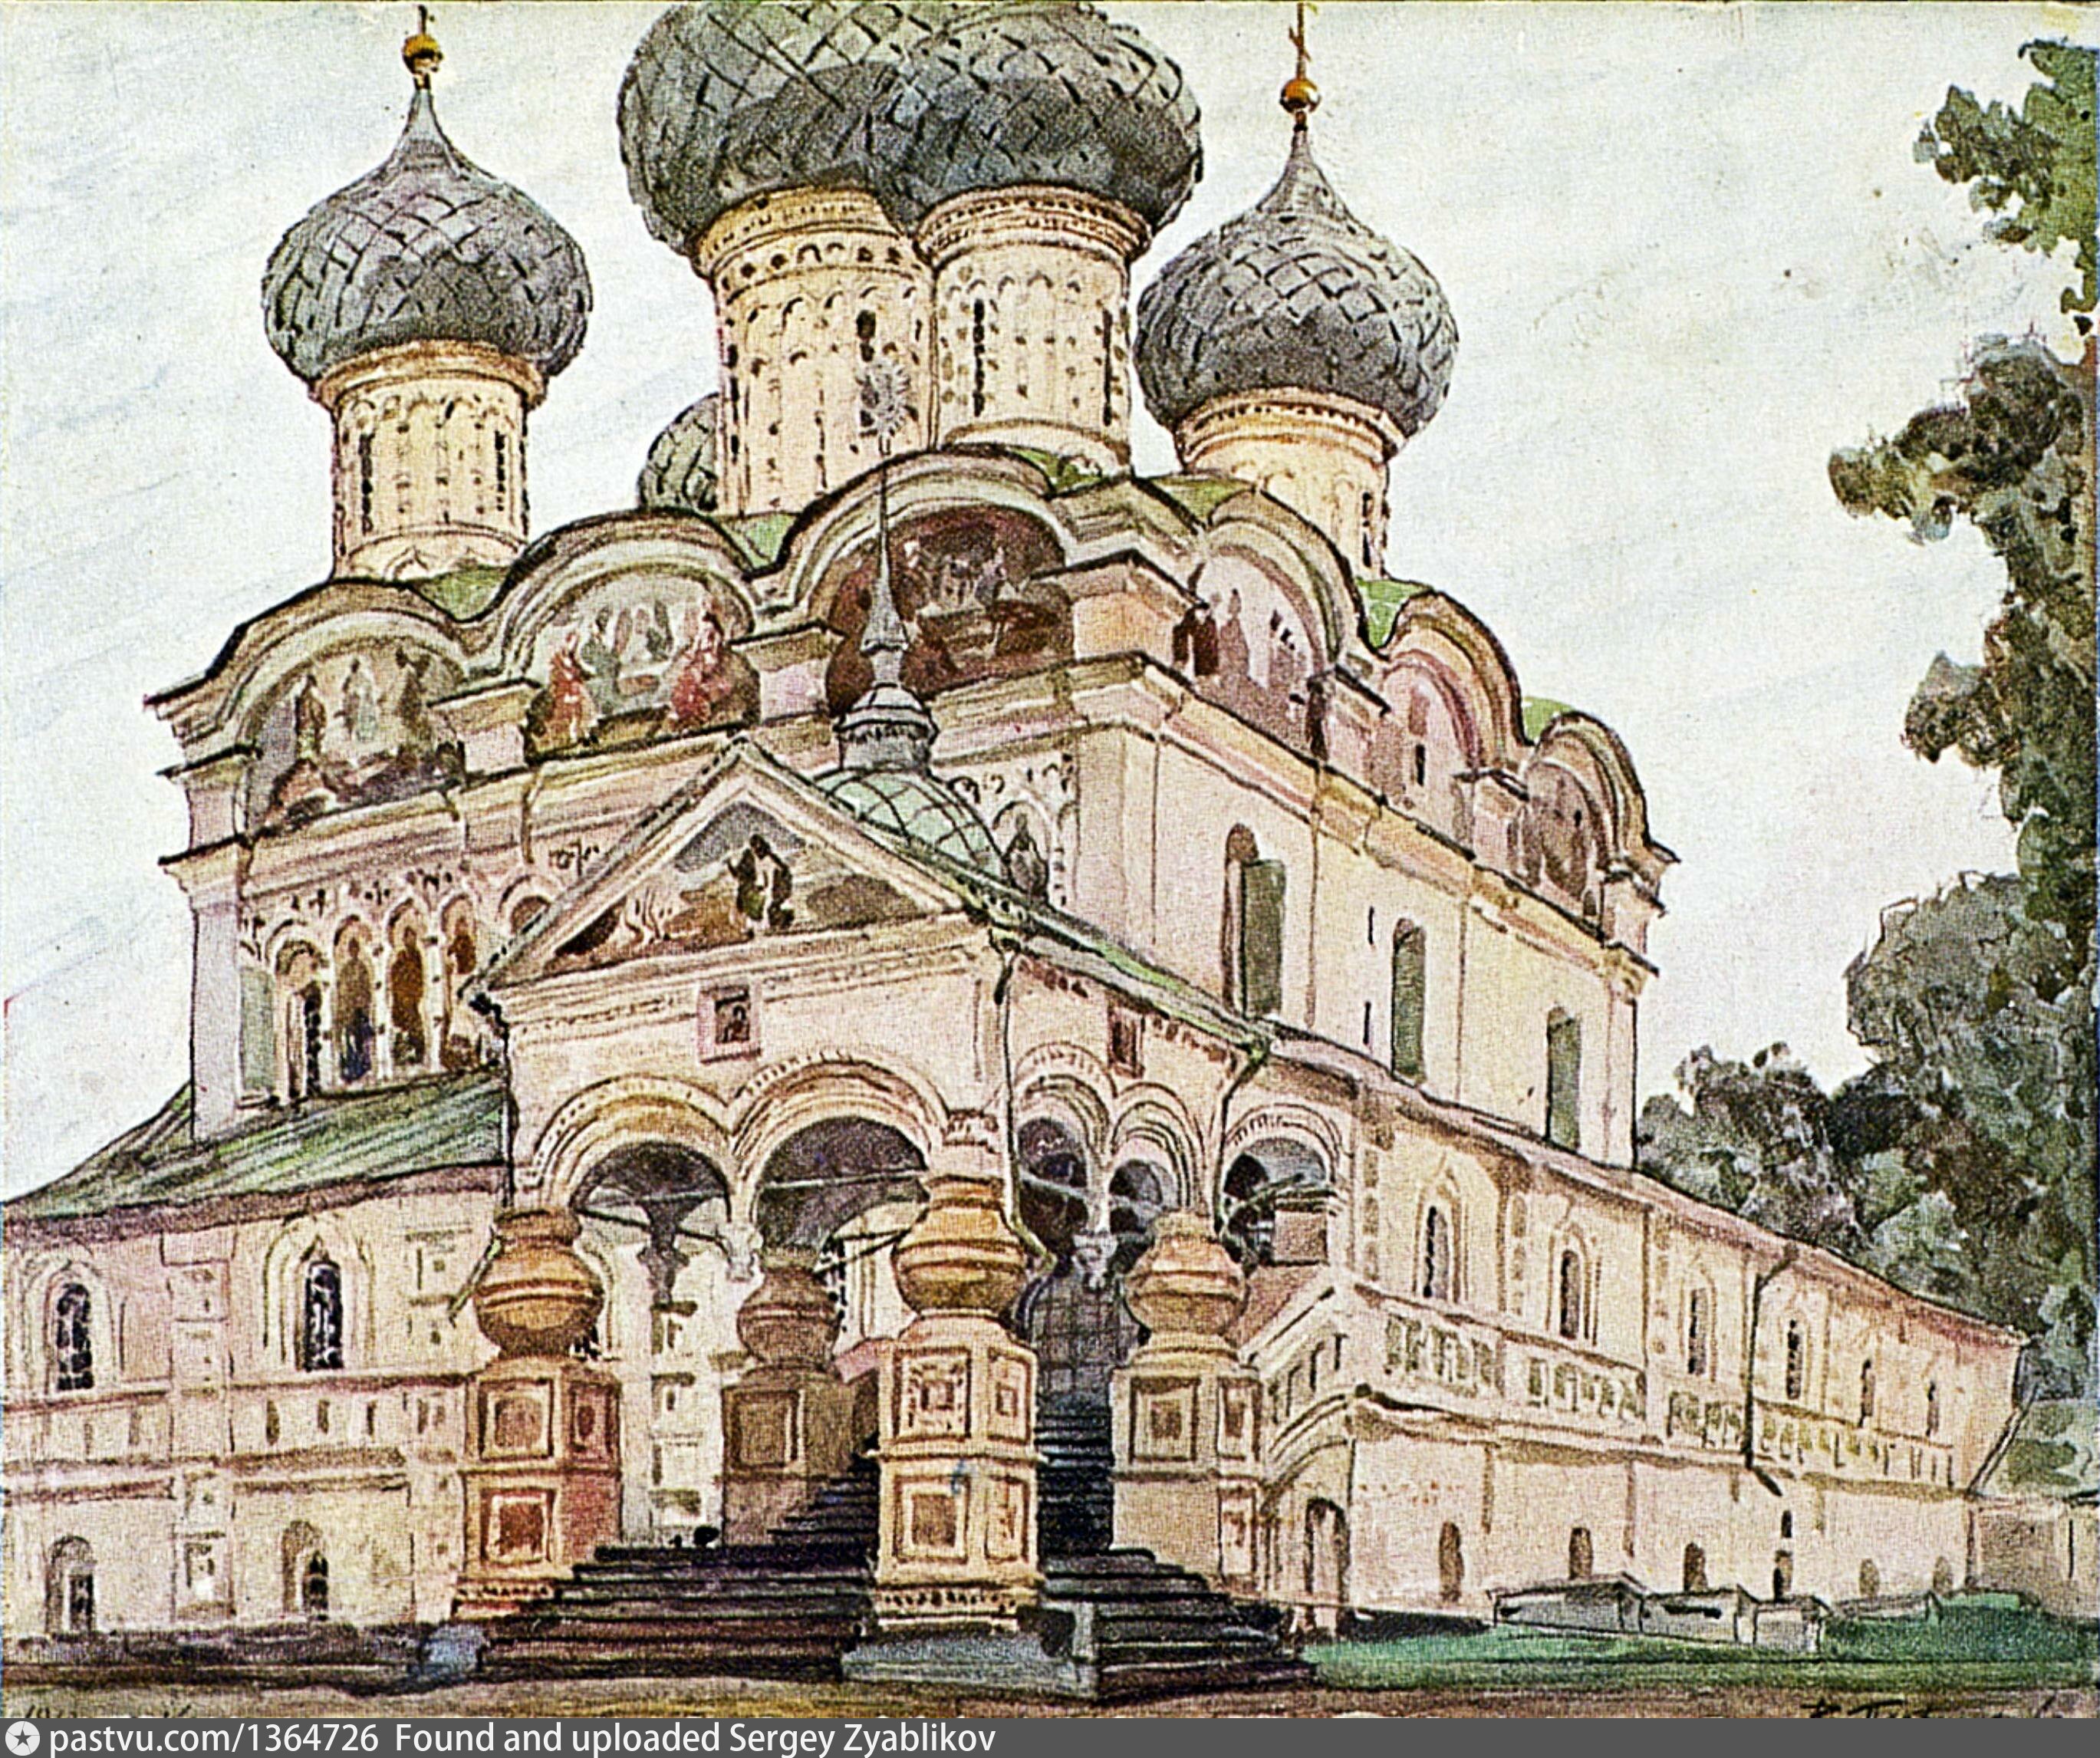 Боголюбов Ипатьевский монастырь близ Костромы